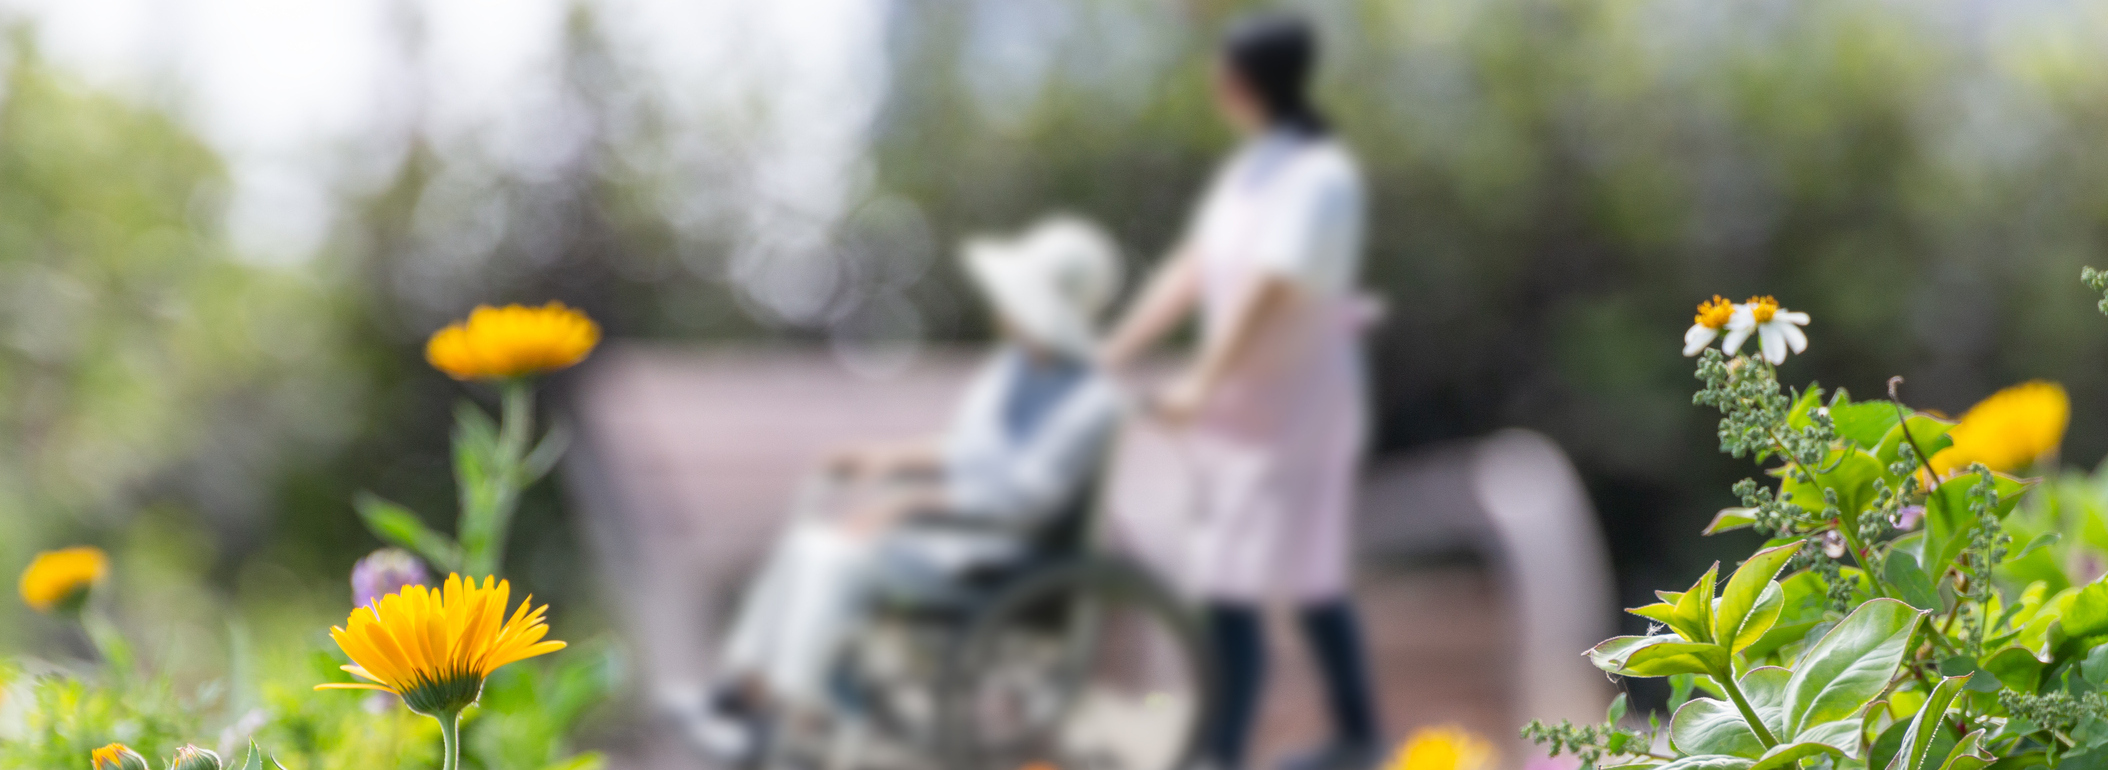 Nursing home nurse pushing a woman in a wheelchair through a garden